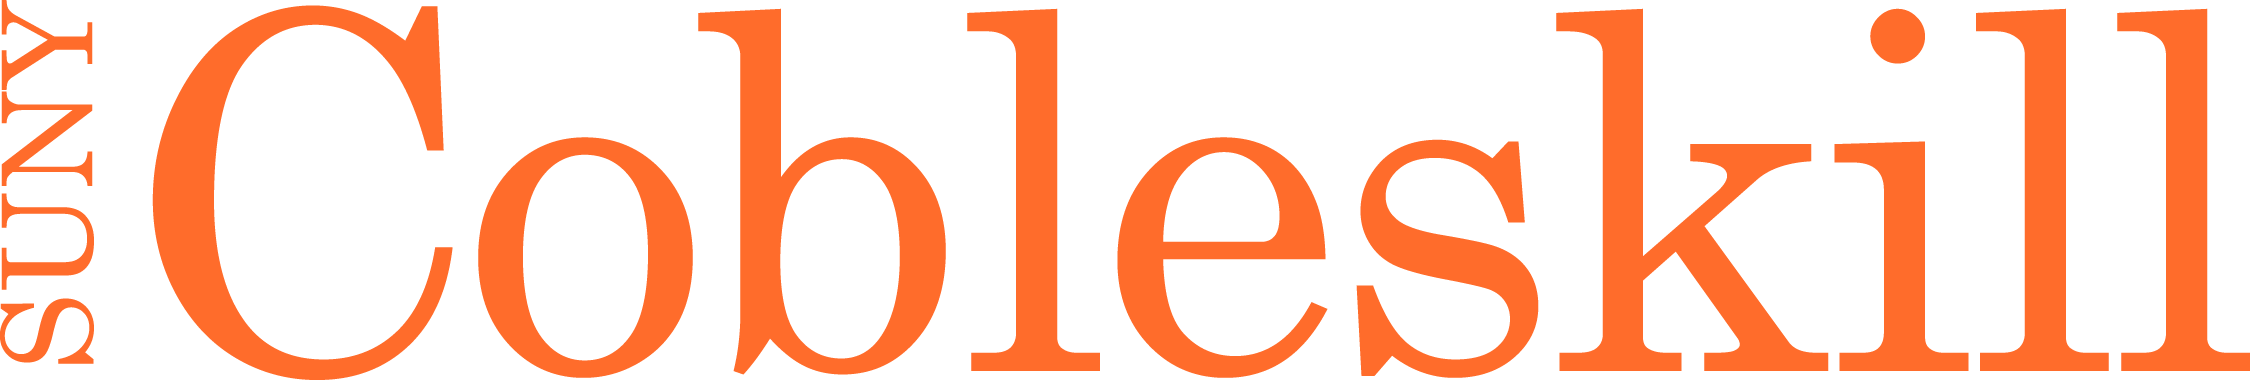 suny cobleskill logo Picture